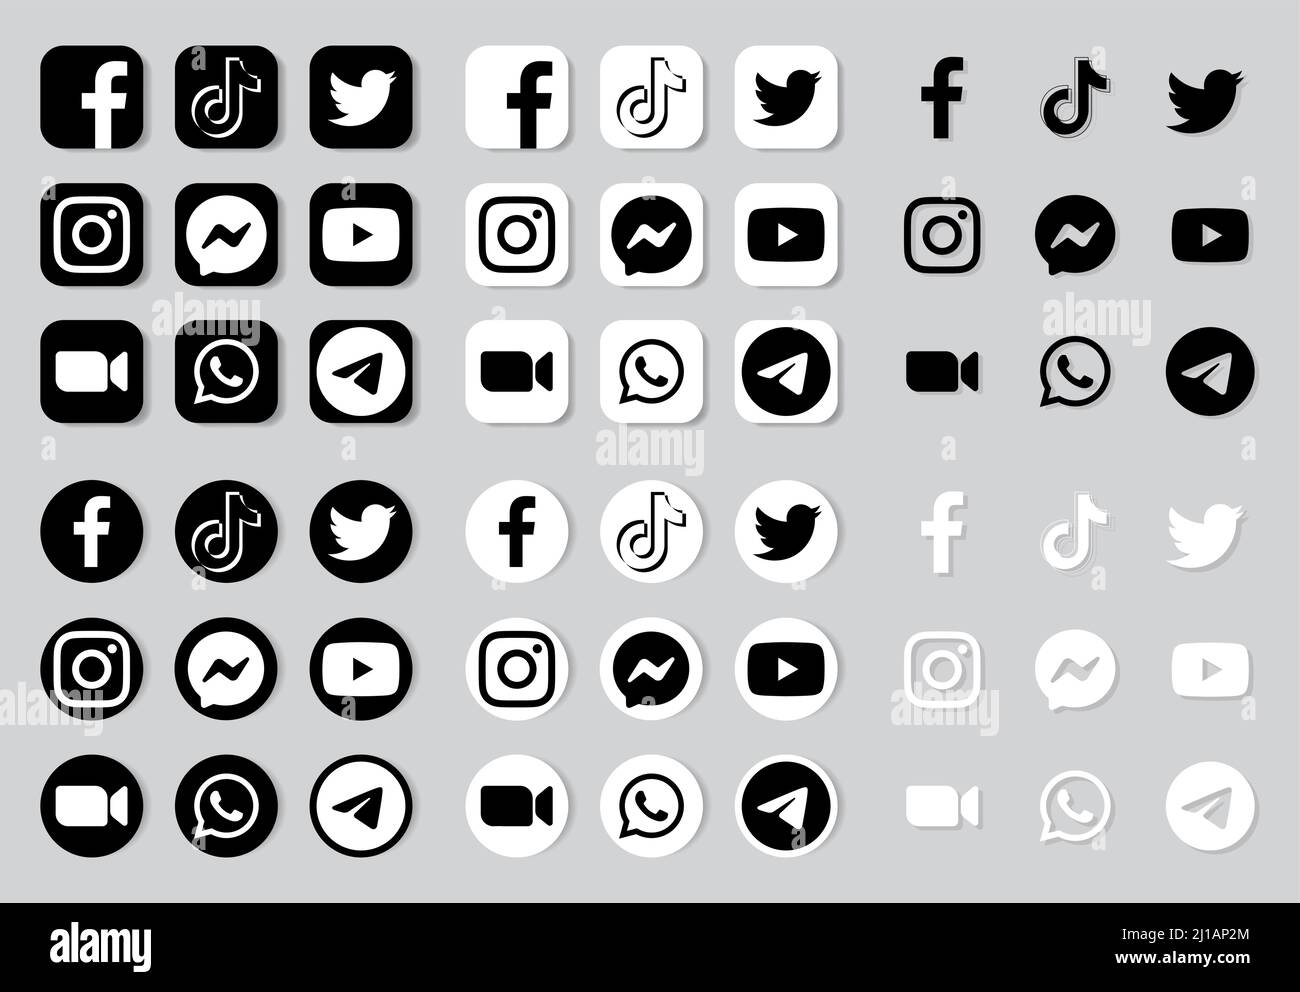 Kiew, Ukraine - 03. Juli 2021: Set von schwarz-weißen Social Media und Mobile Apps Icons und Logos, in verschiedenen Formen: Facebook, Twitter, Instagram, Stock Vektor